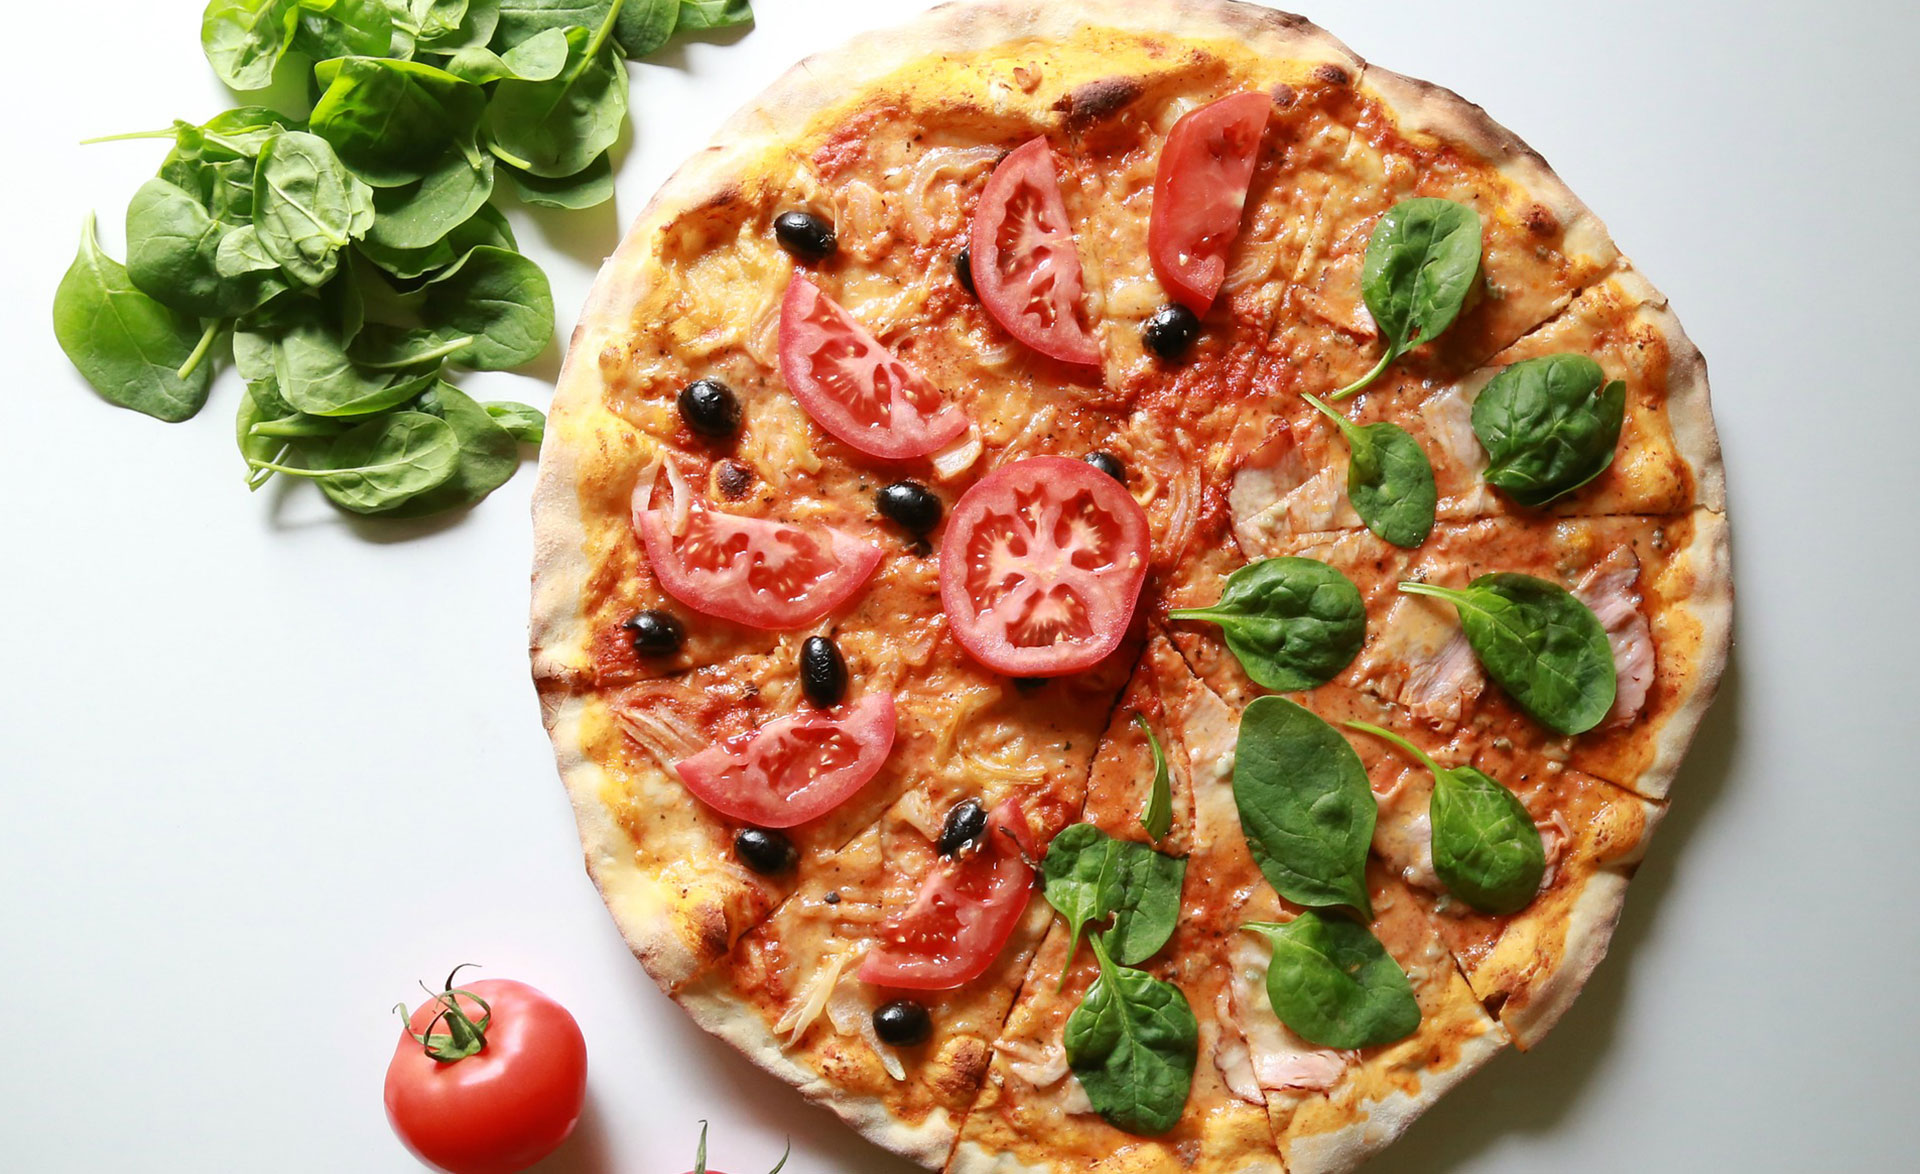 Co je nezdravé na pizze?